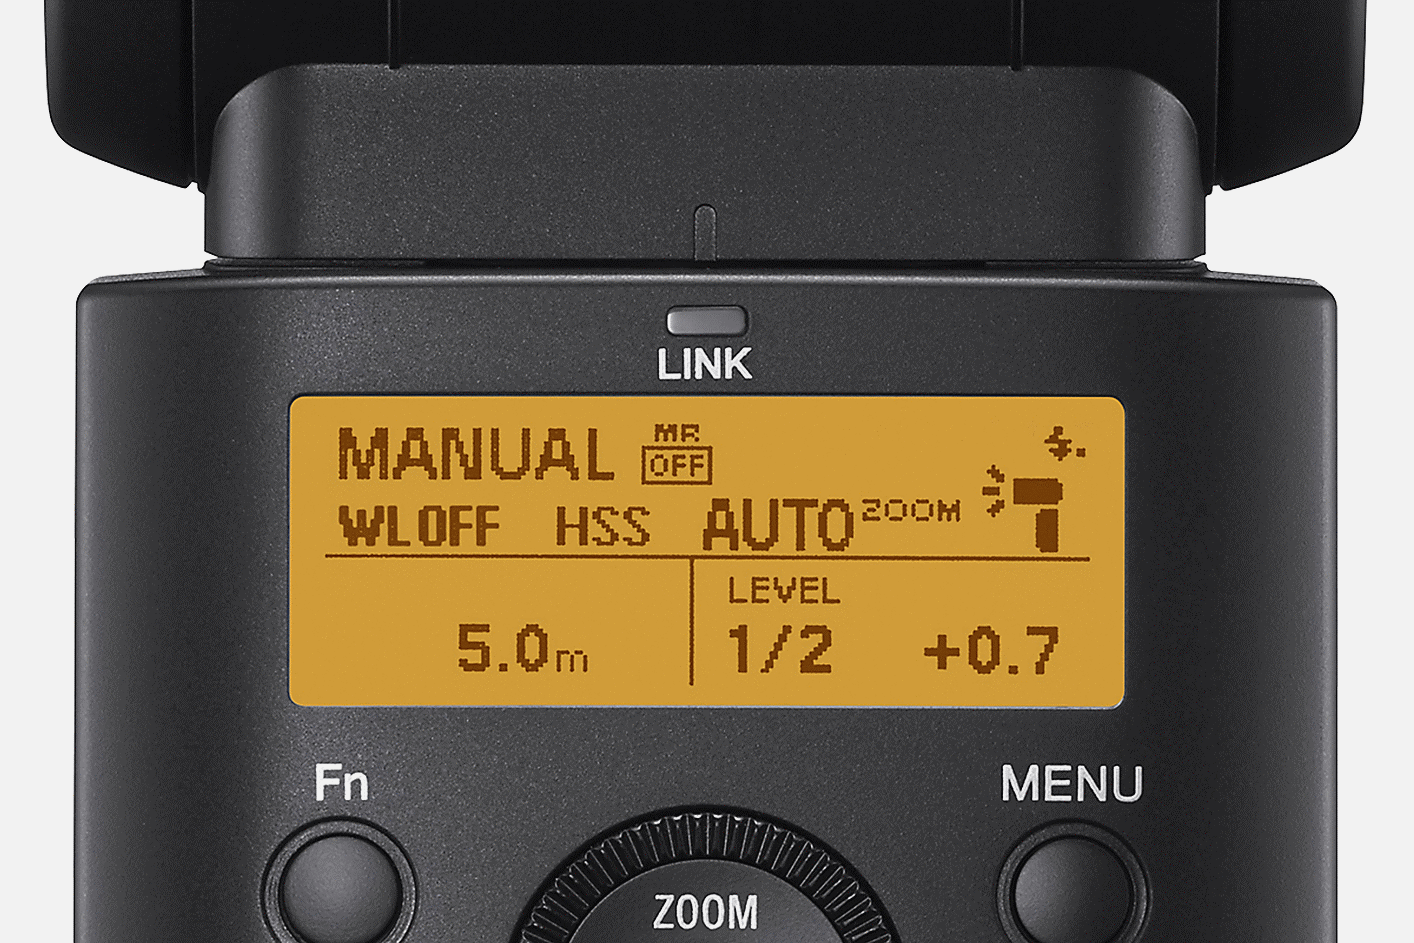 Gambar close-up tampilan produk yang menampilkan info status, tombol panah yang dapat diatur, dan roda kontrol